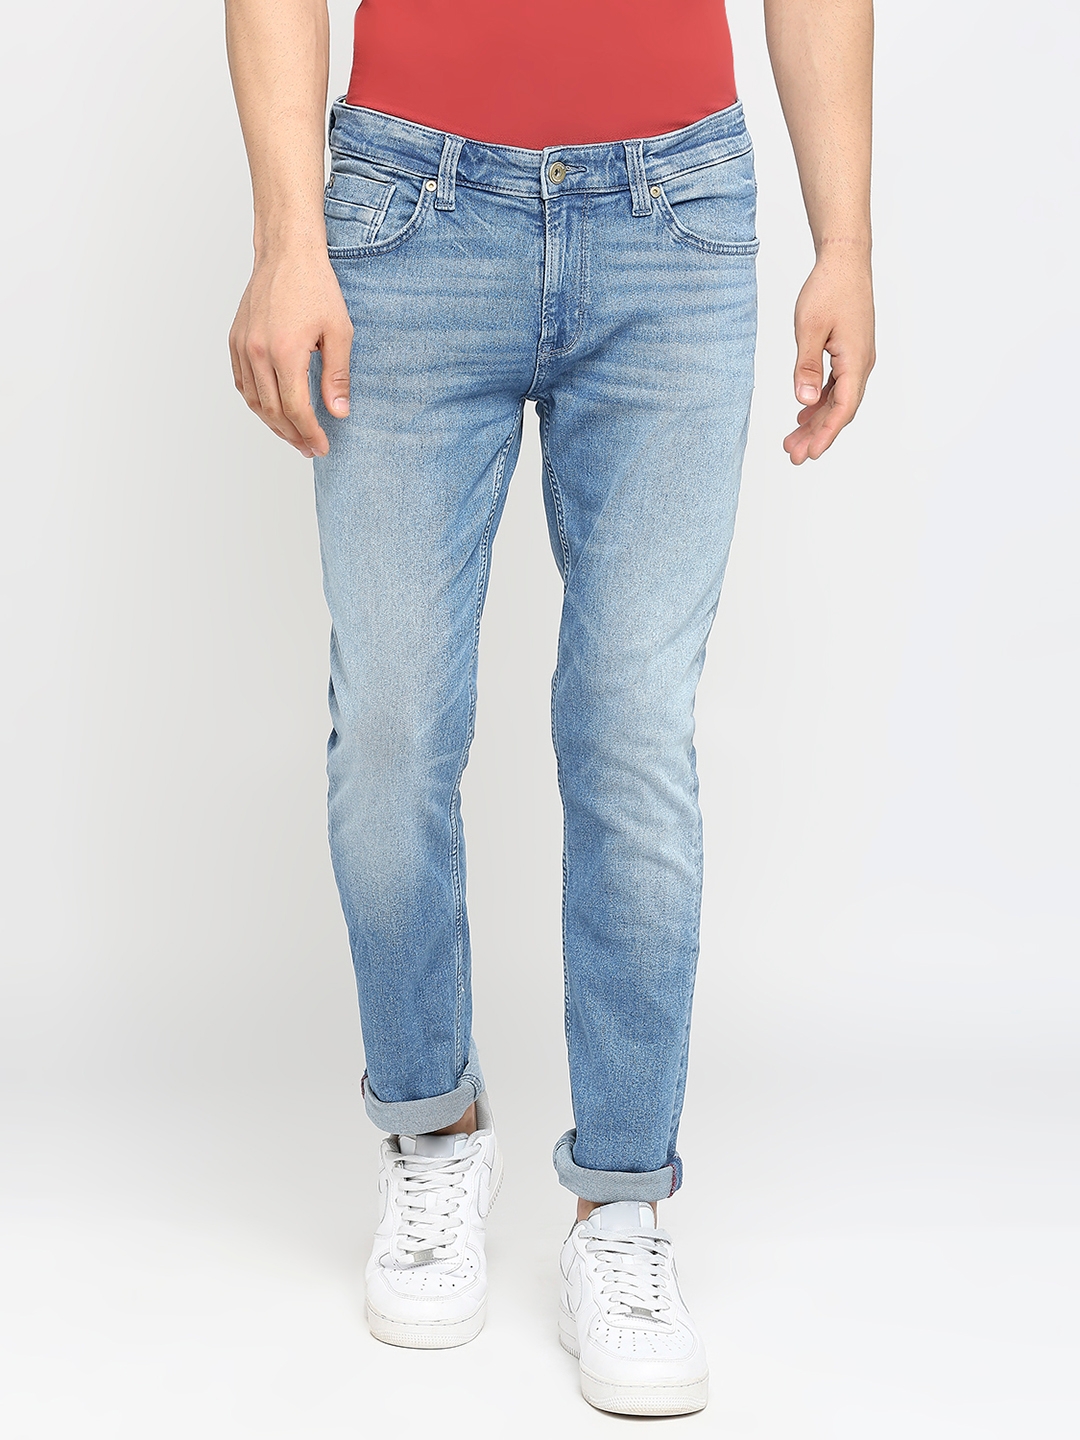 Spykar | Men's Blue Cotton Solid Jeans 0